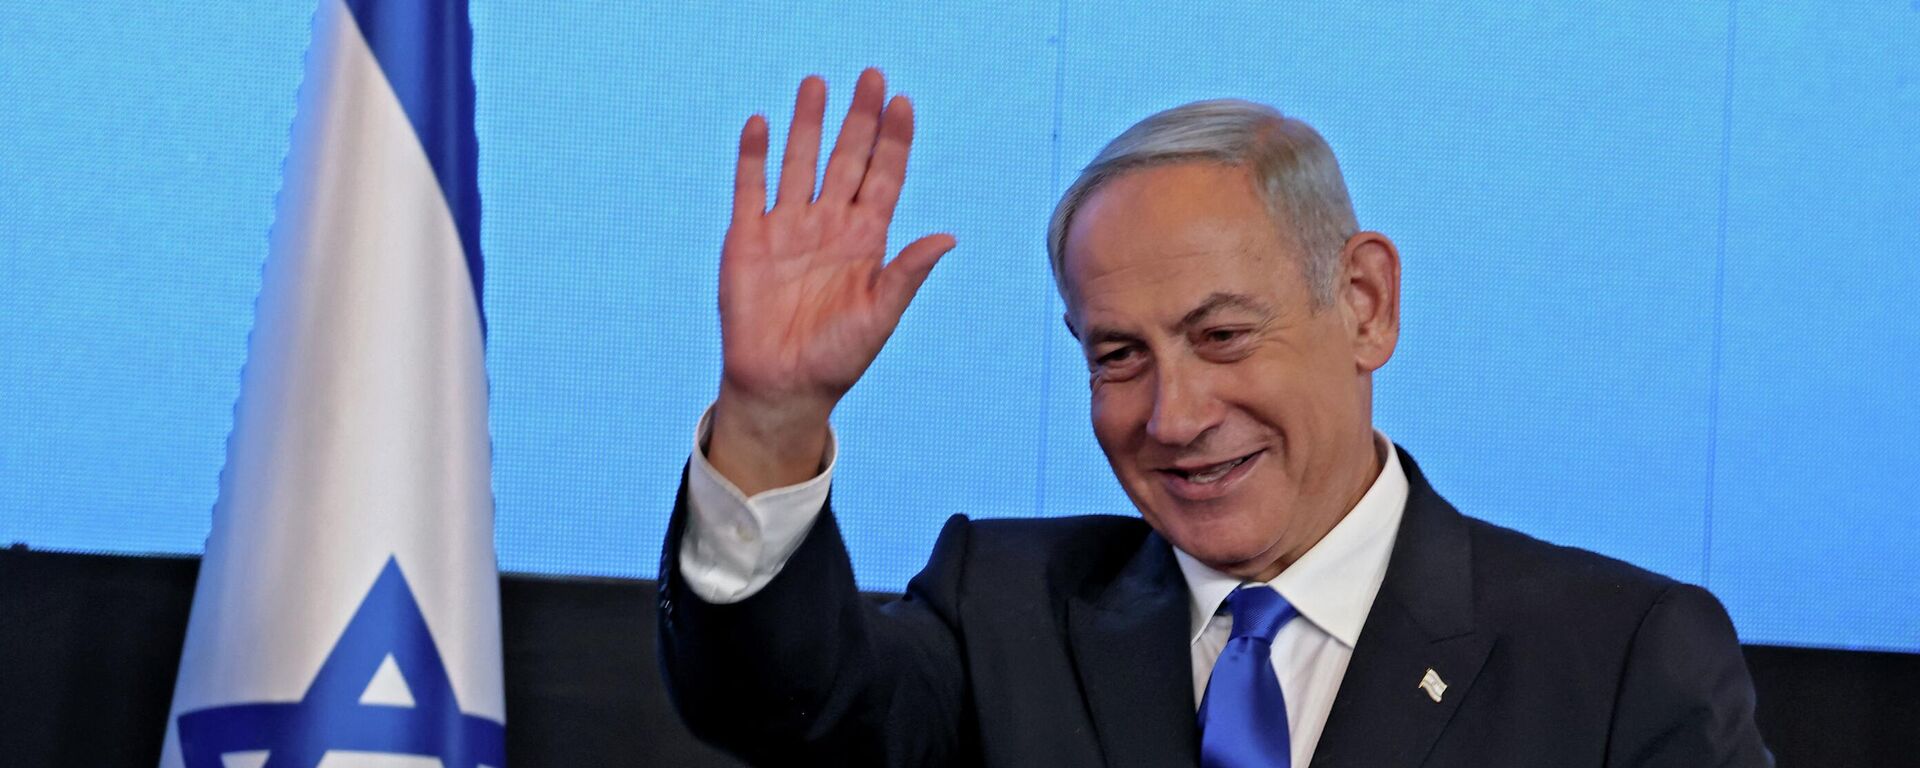 زعيم المعارضة الإسرائيلية بنيامين نتنياهو بعد فوزه في الانتخابات العامة في إسرائيل، نوفمبر/ تشرين الثاني 2022. - سبوتنيك عربي, 1920, 13.11.2022